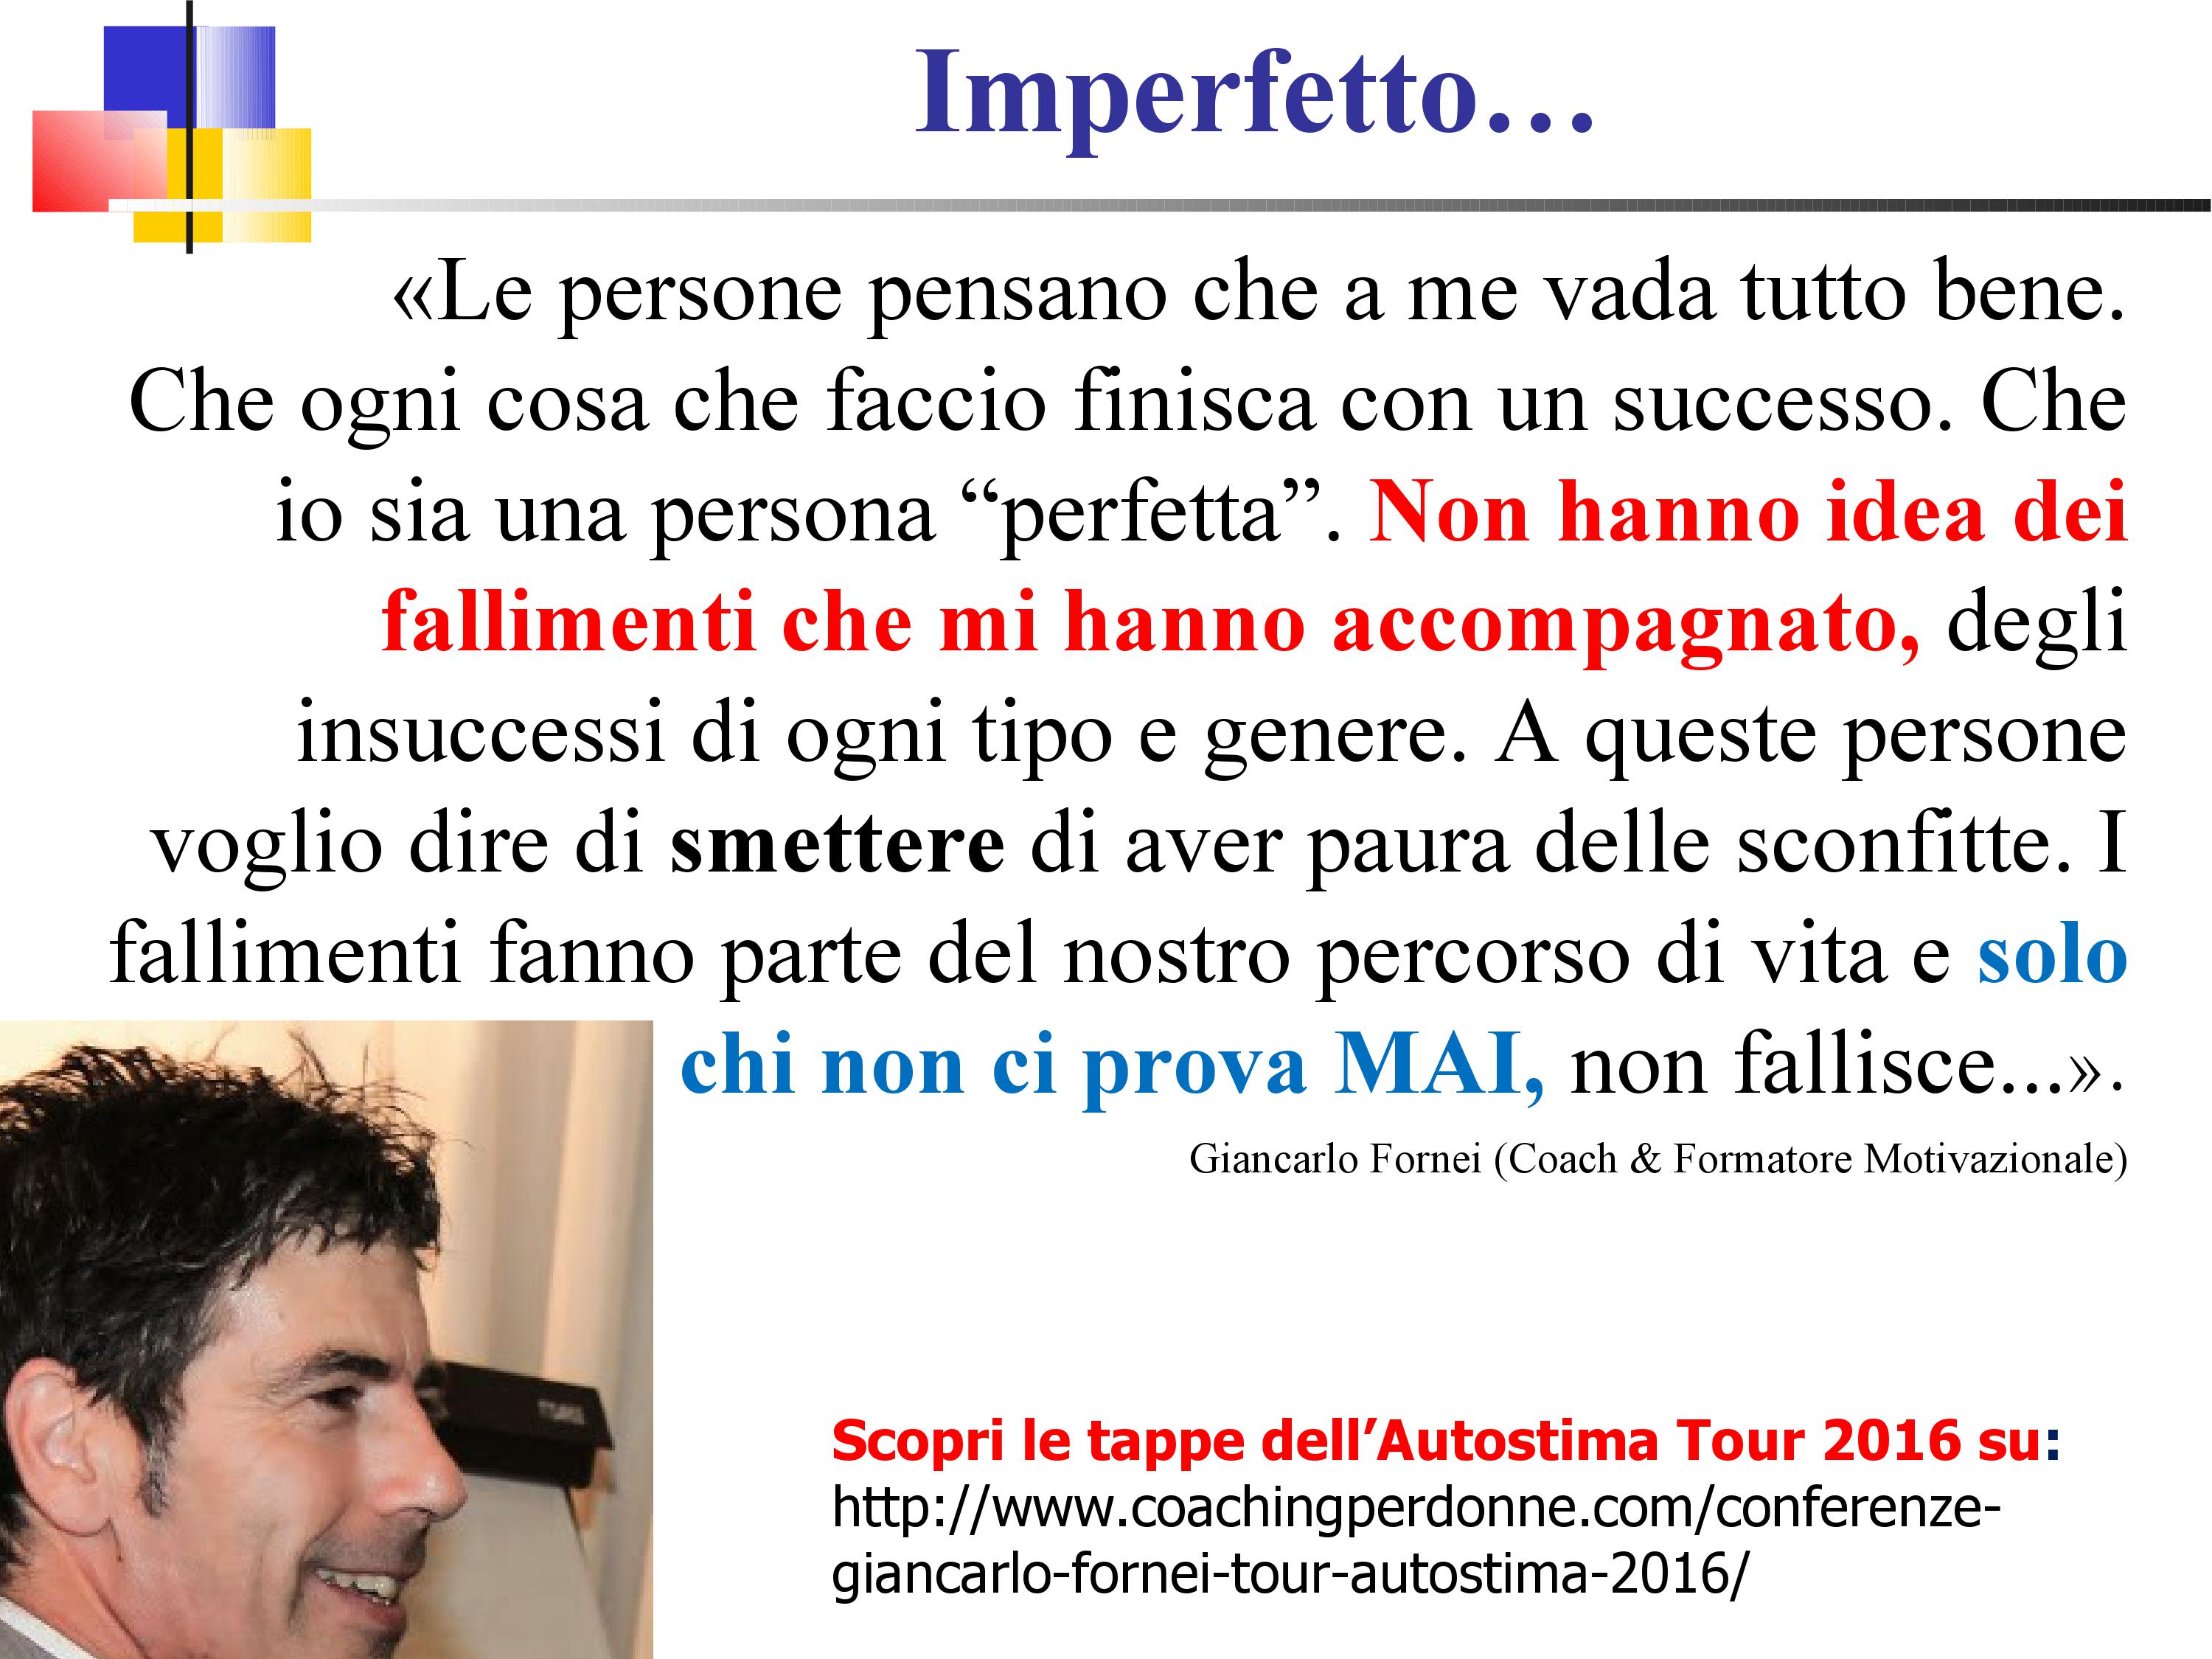 IMPERFETTO - una frase del coach motivazionale Giancarlo Fornei (25 giugno 2016)